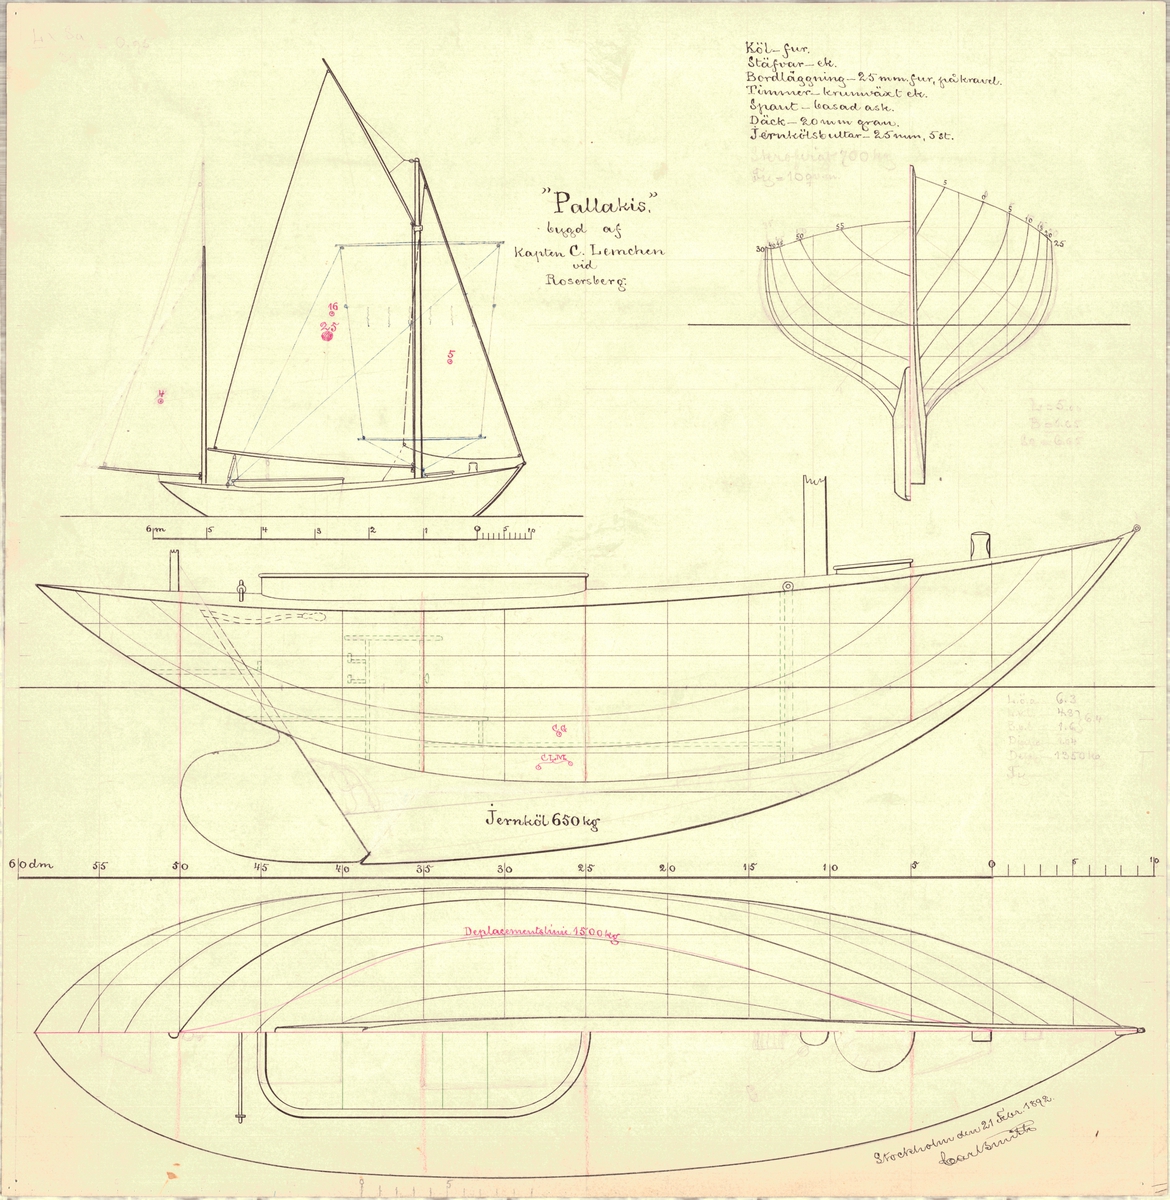 Enmastad segelbåt med gaffelrigg, ritad av Carl Smith för Cristoffer Lemchen
Linjeritning i plan och profil, skiss segelplan och spantruta